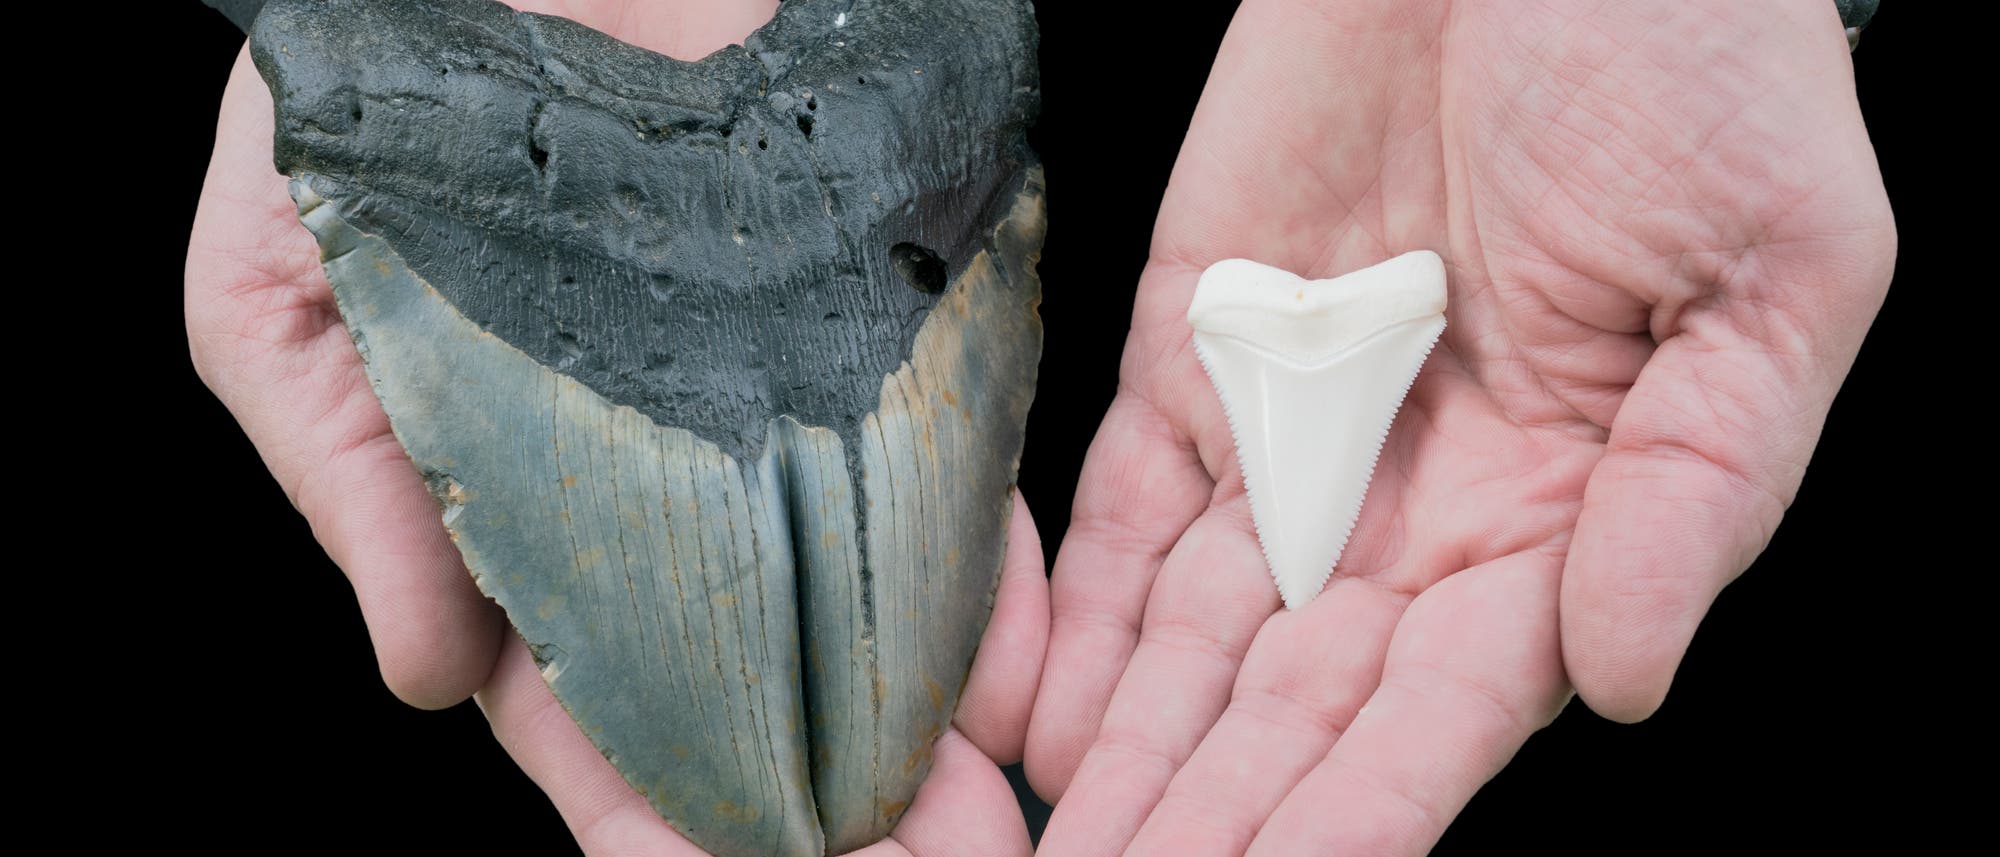 Zahn eines Megalodons (links) im Vergleich zum Zahn eines Weißen Hais